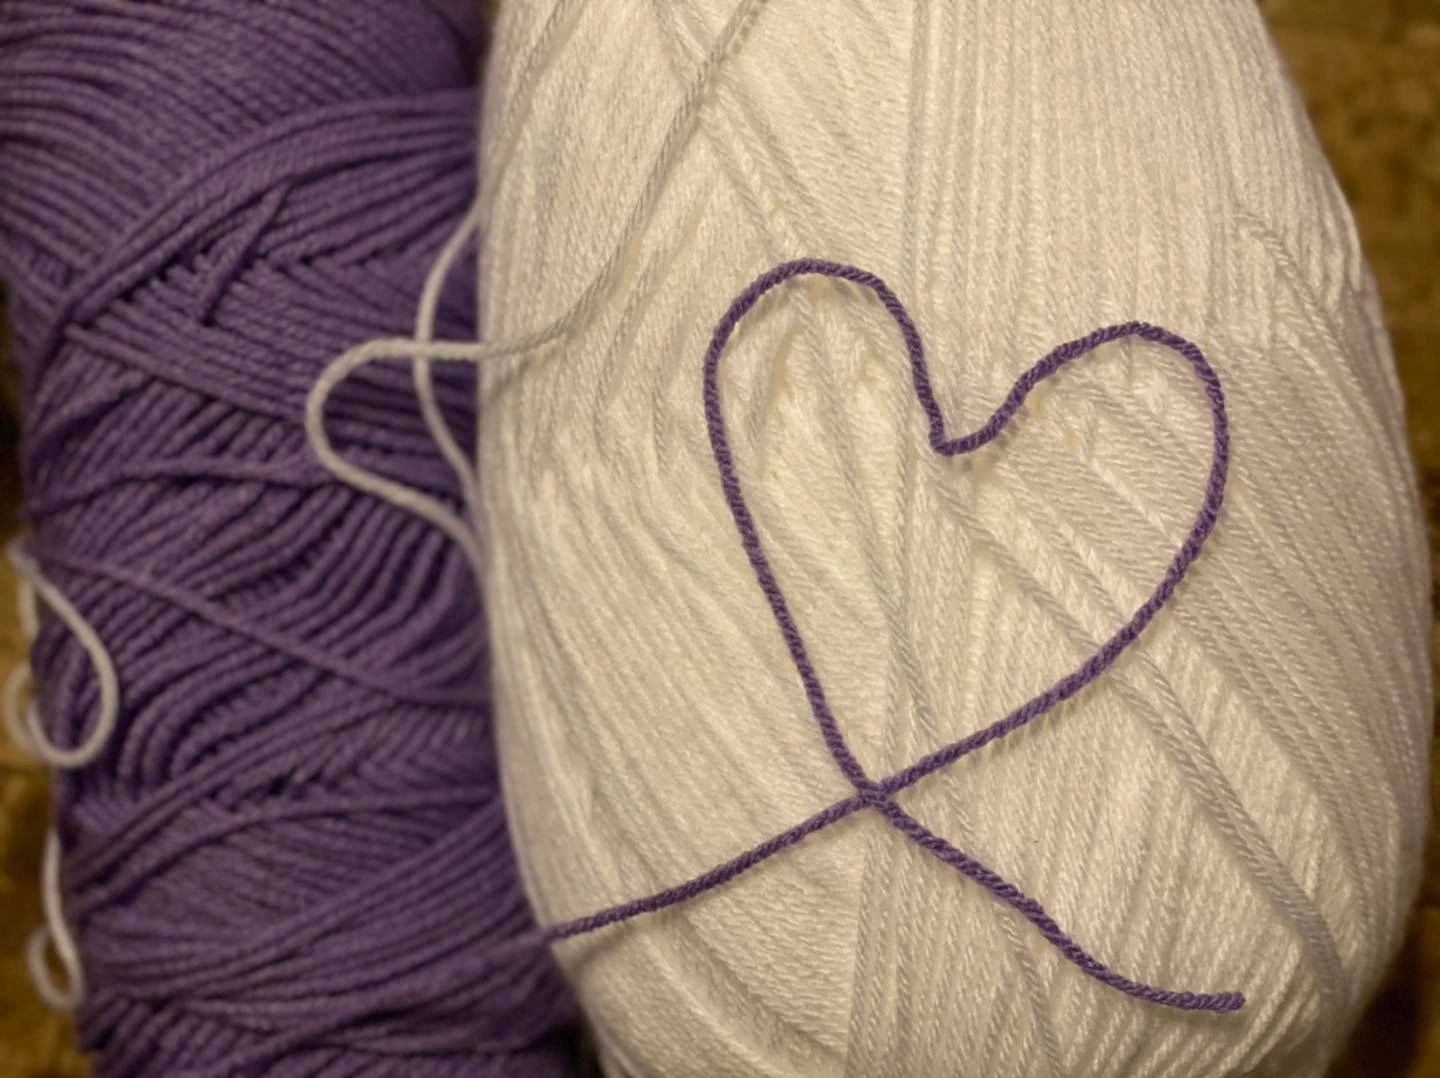 Bundle of yarn in the shape of a heart